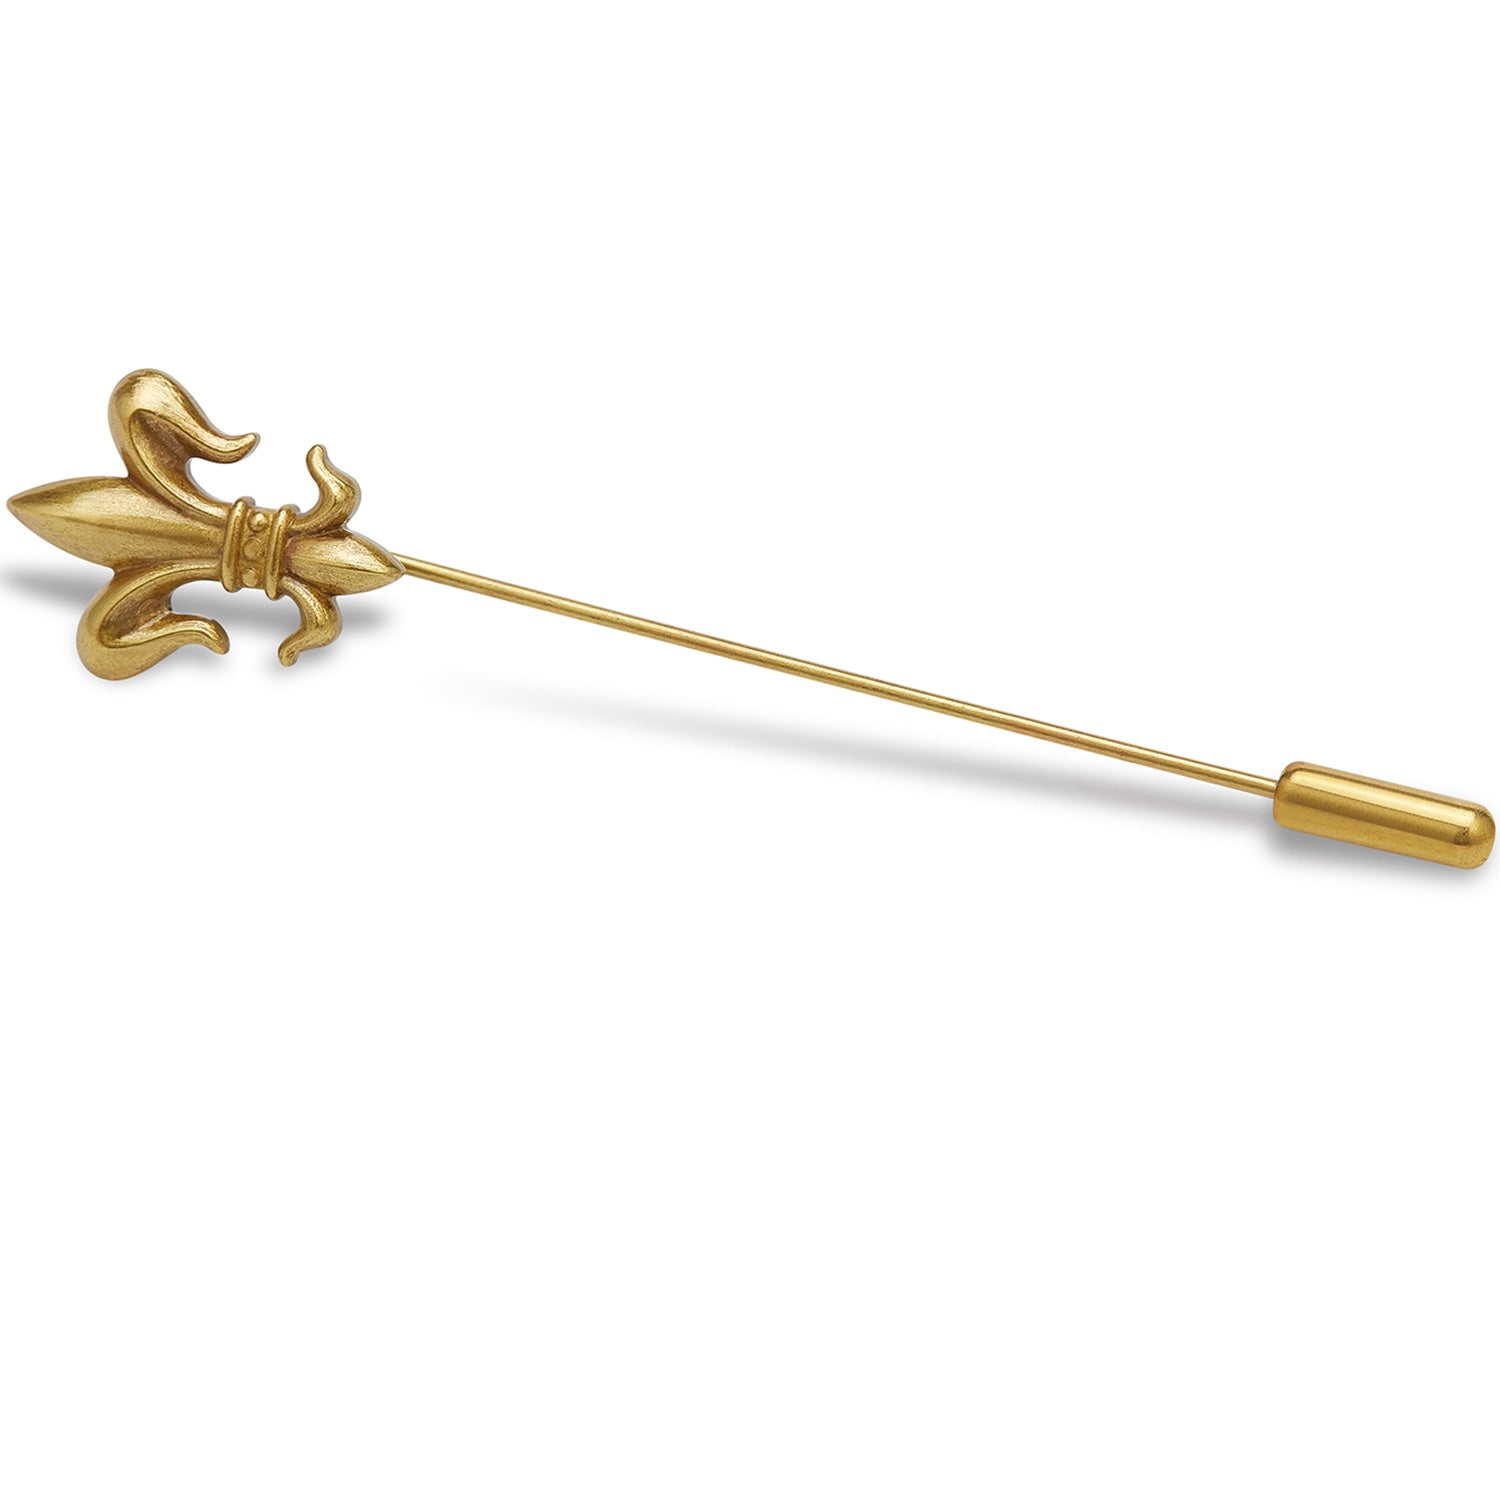 Antique Gold Fleur De Lis Lapel Pin